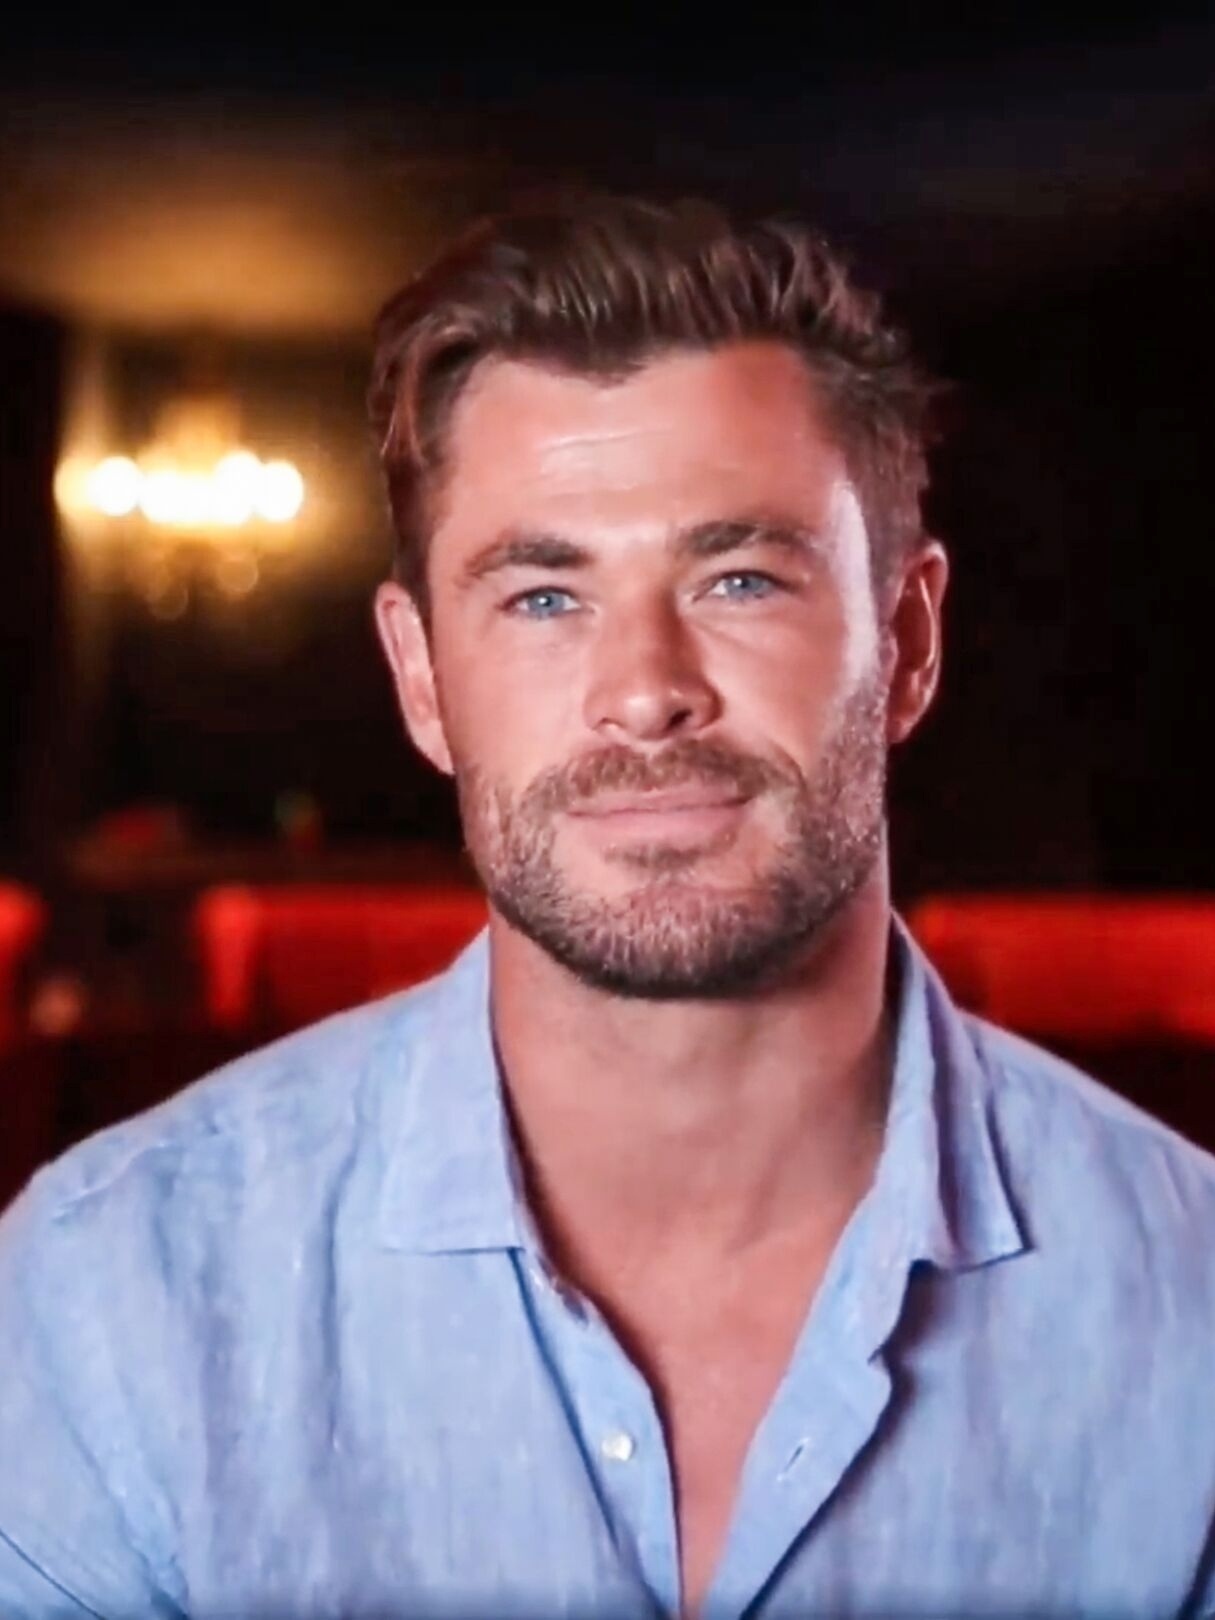 Chris Hemsworth wearing a blue shirt